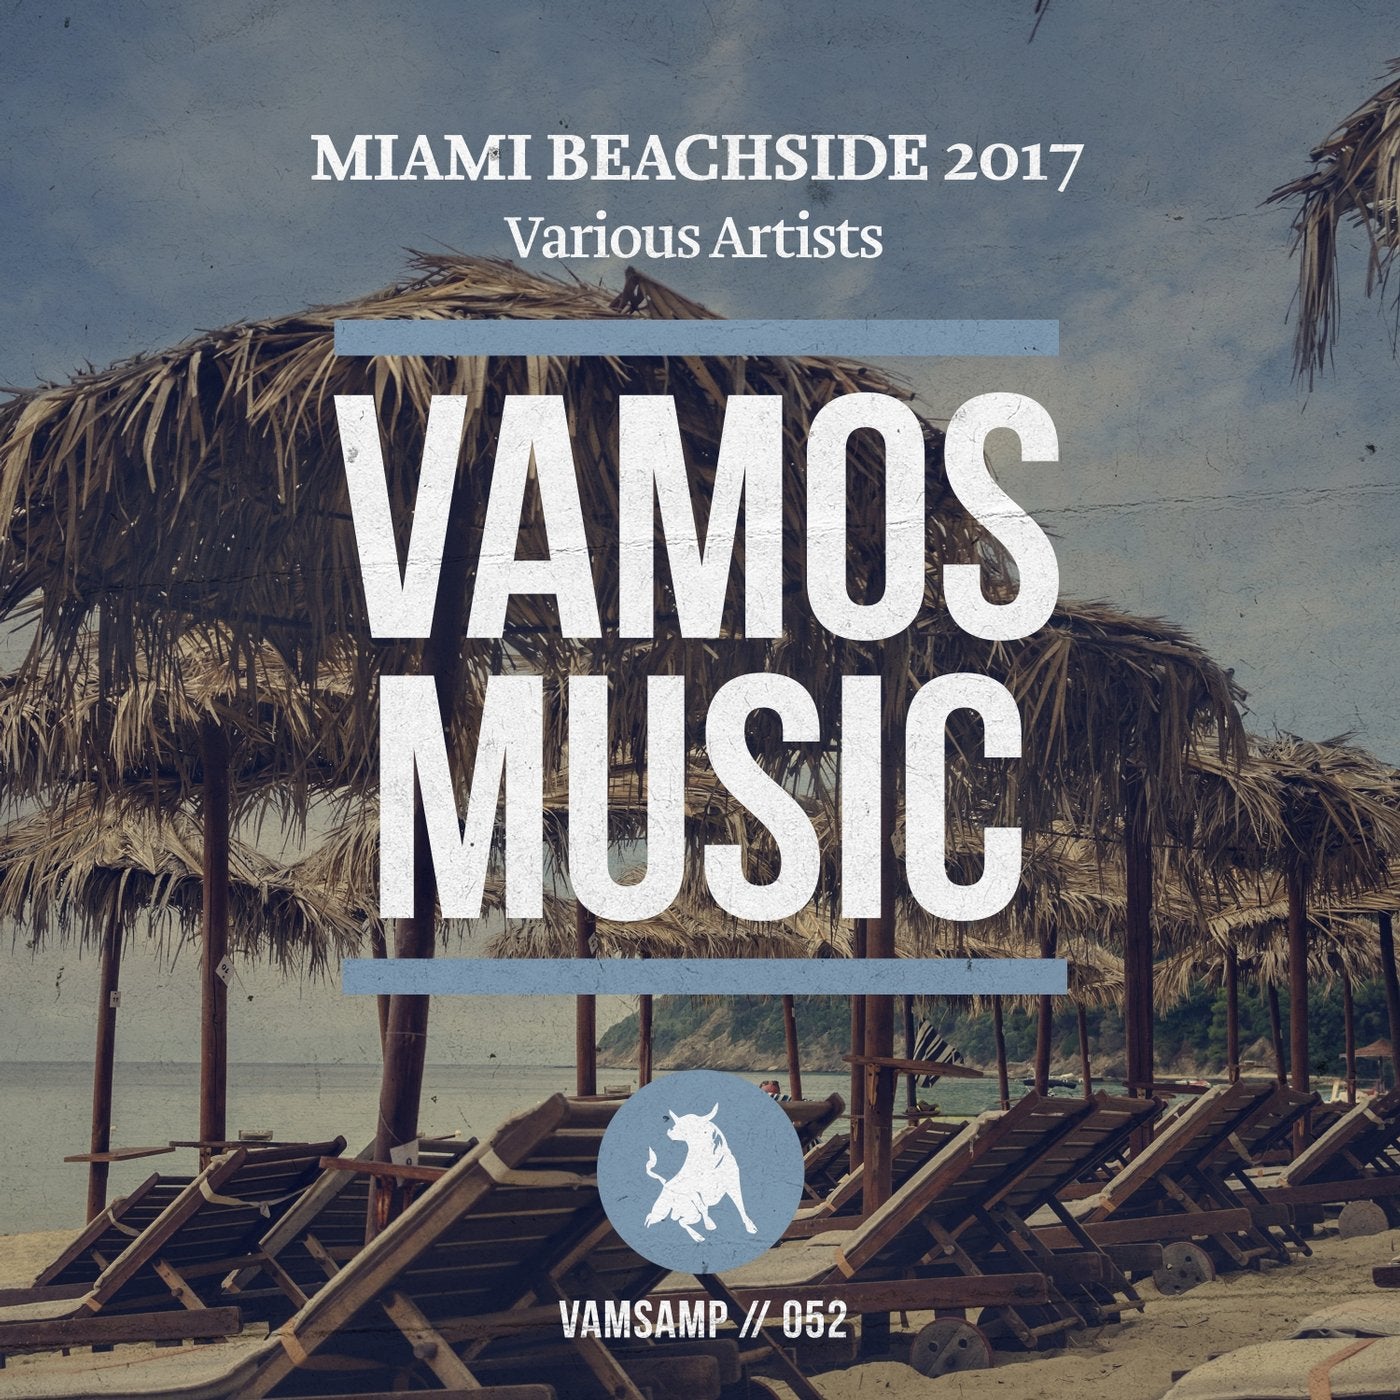 Miami Beachside 2017